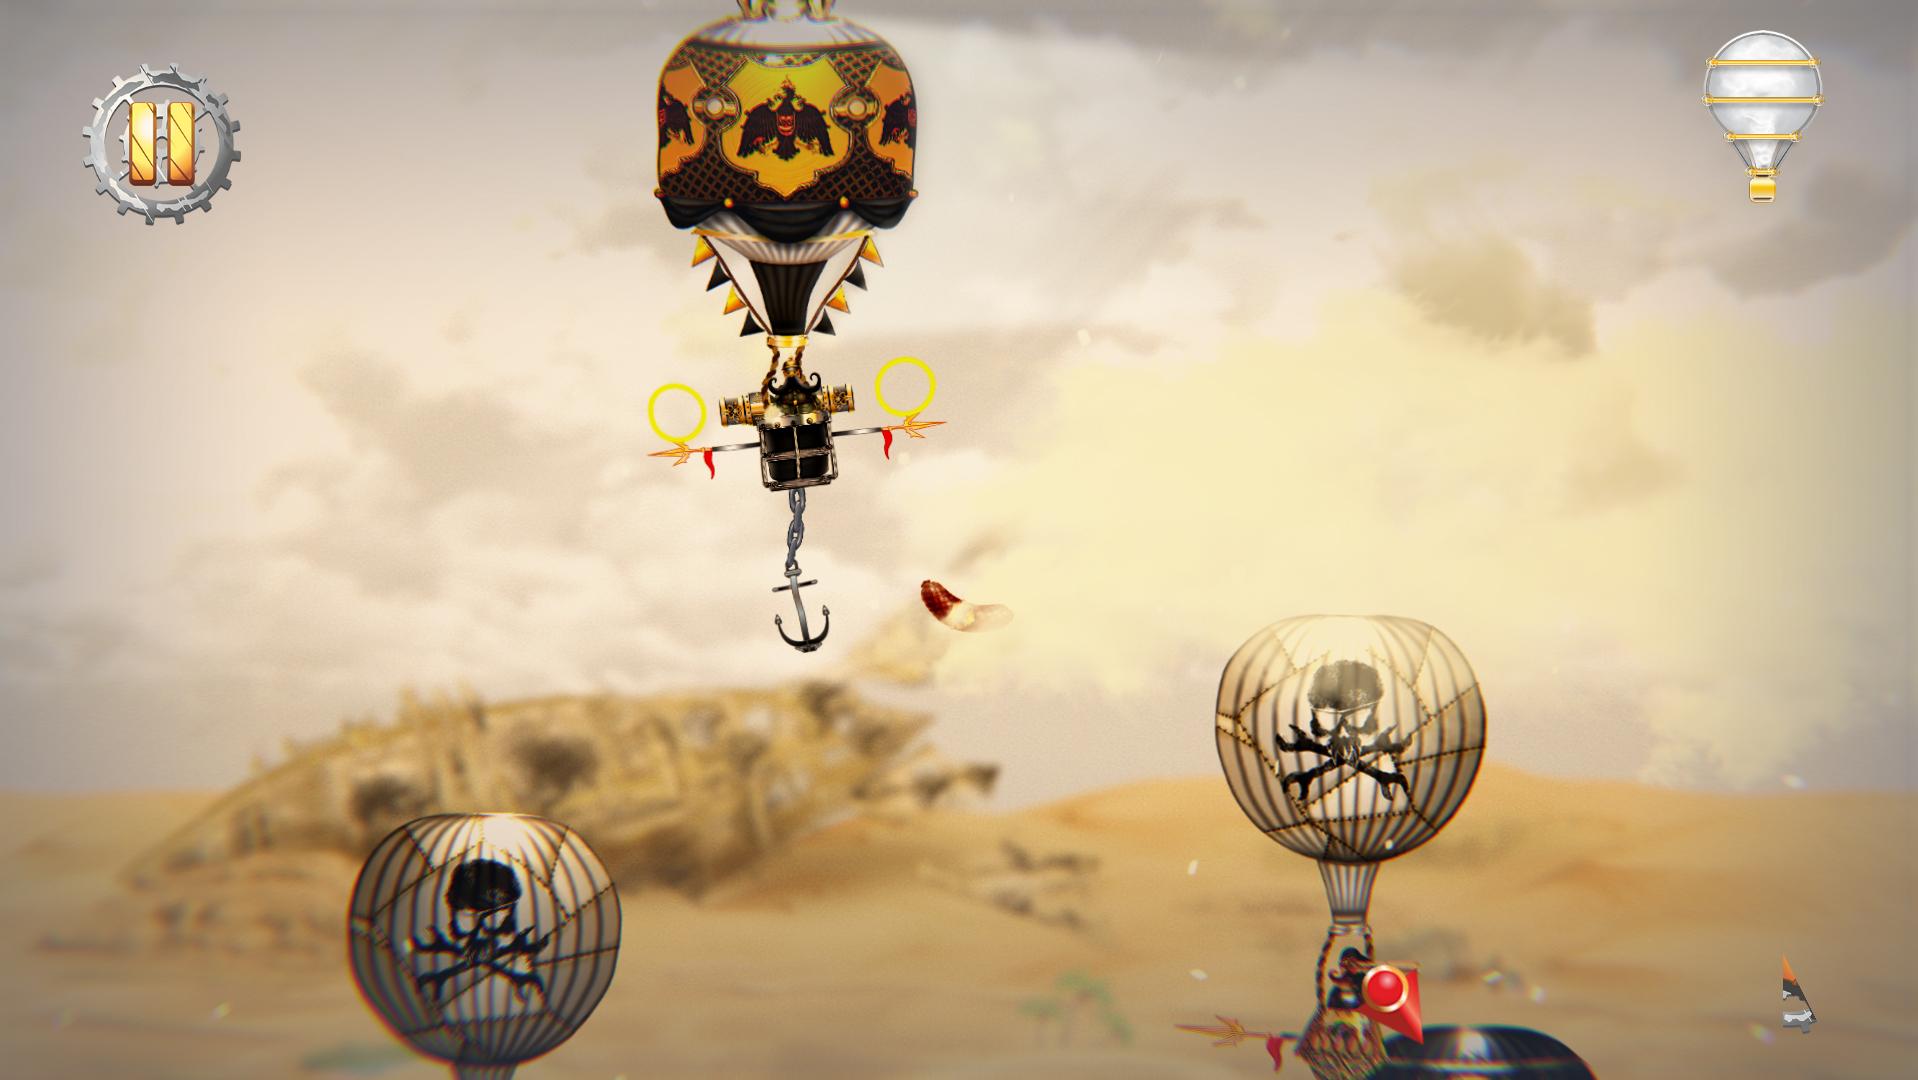 Screenshot №5 from game Pilam Sky